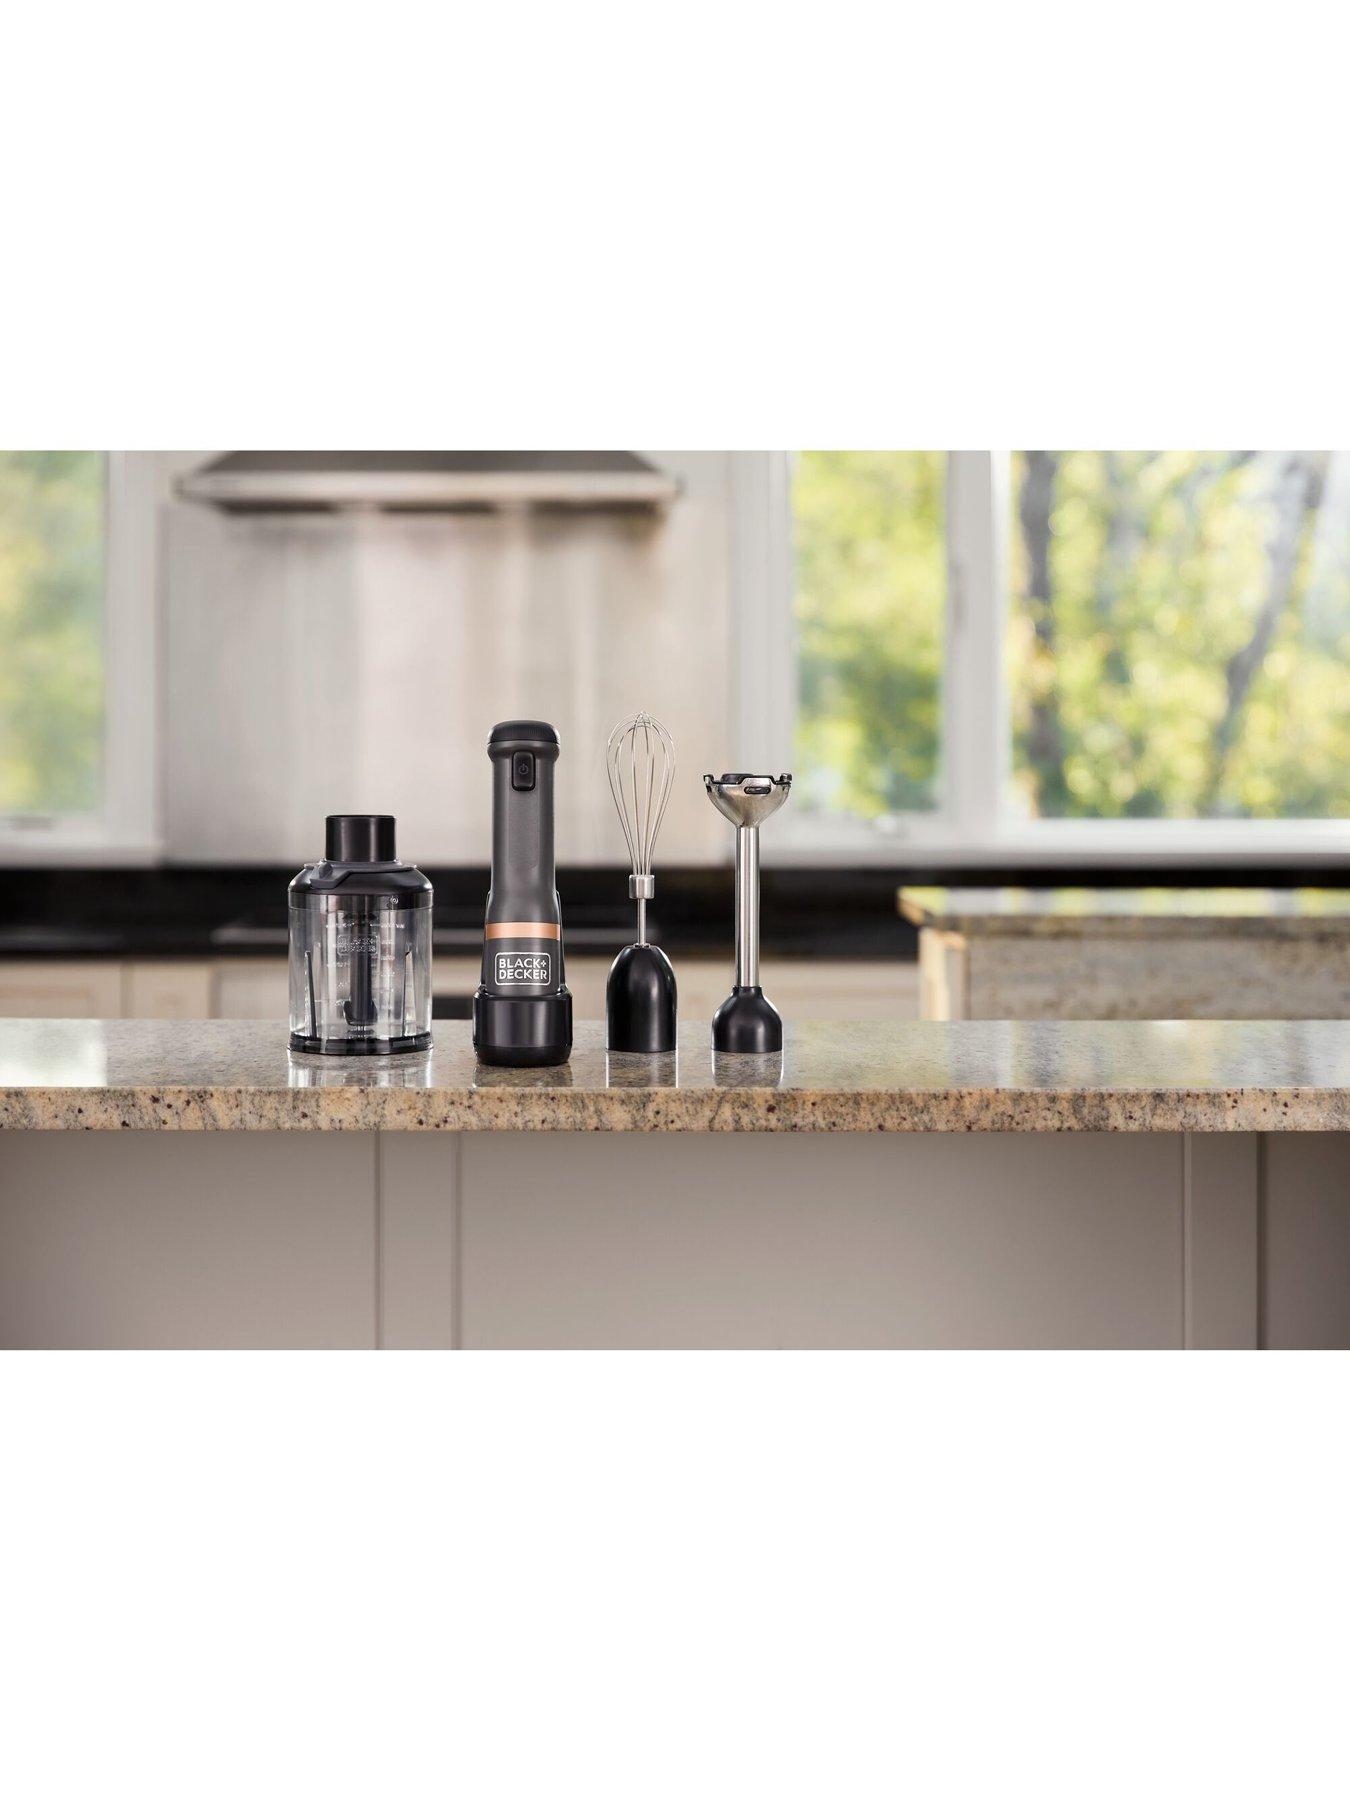 Black & Decker BLACK+DECKER Grey Cordless Kitchen Wand Multi-Tool Kit  BCKM1013KG-GB